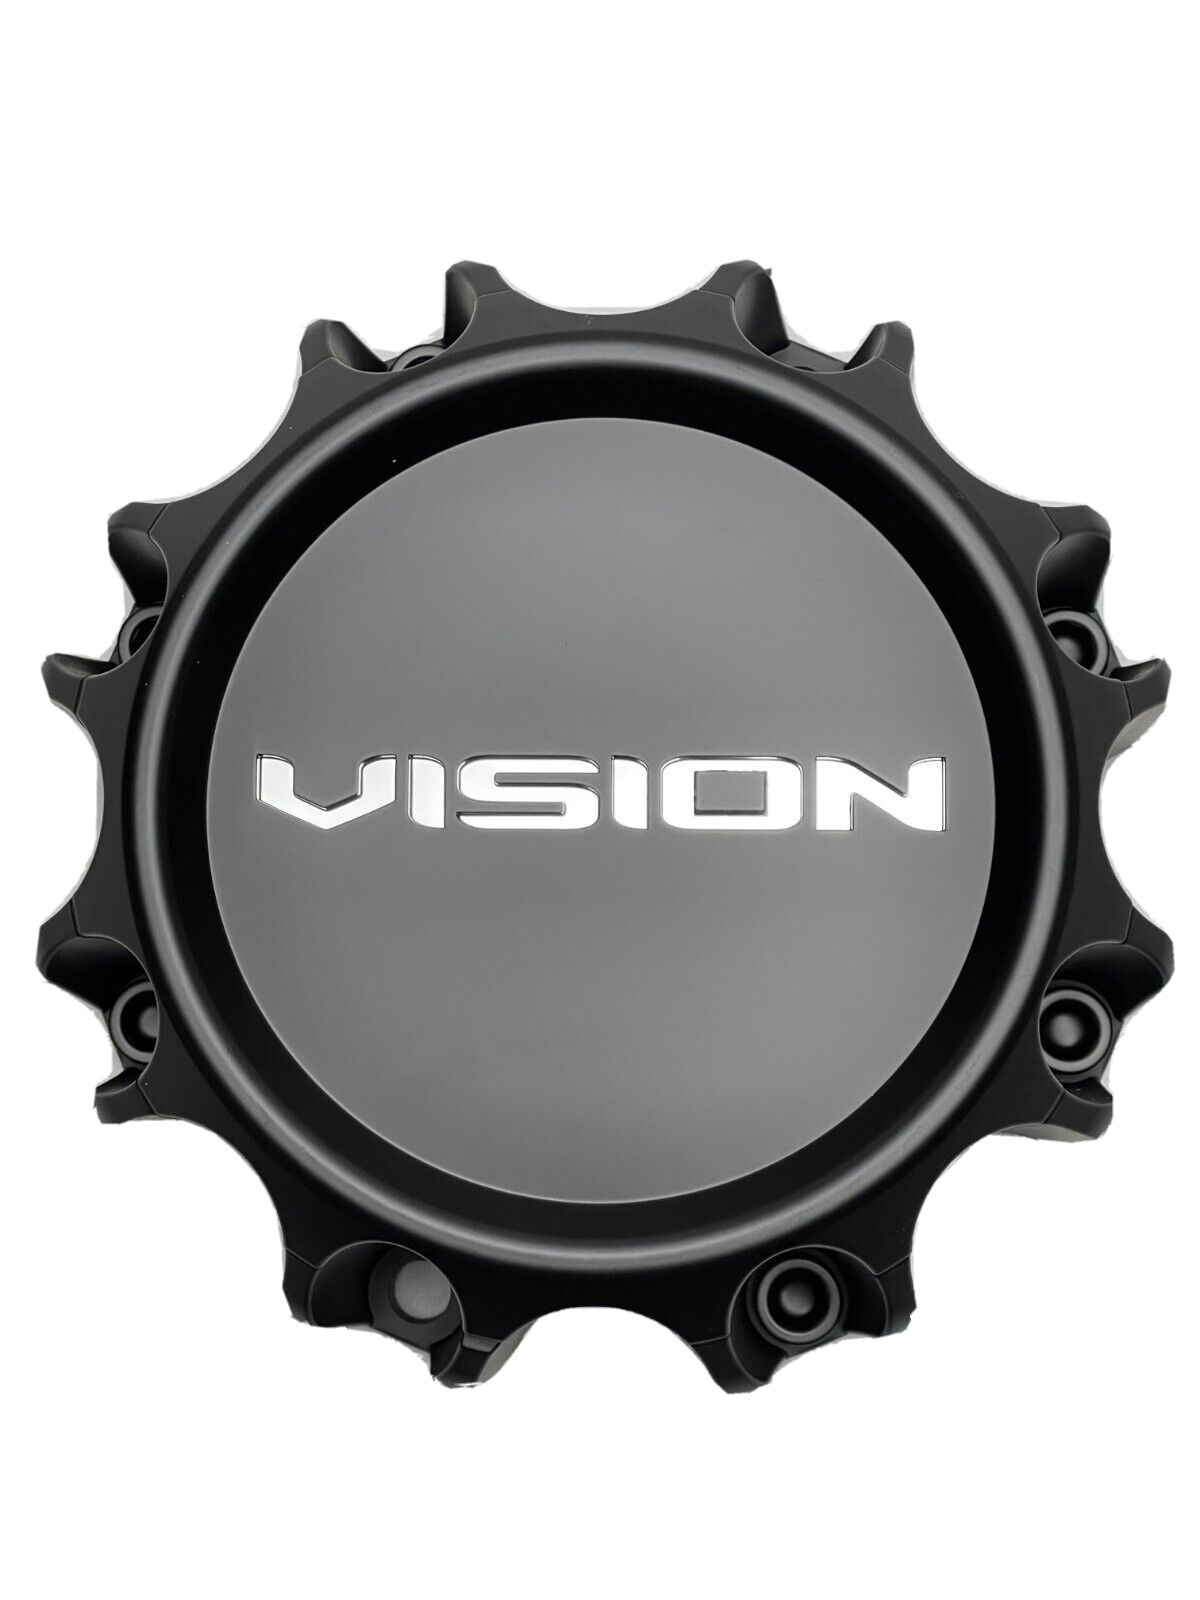 Vision Matte Black 8 Lug Wheel Center Cap C353MB-8V